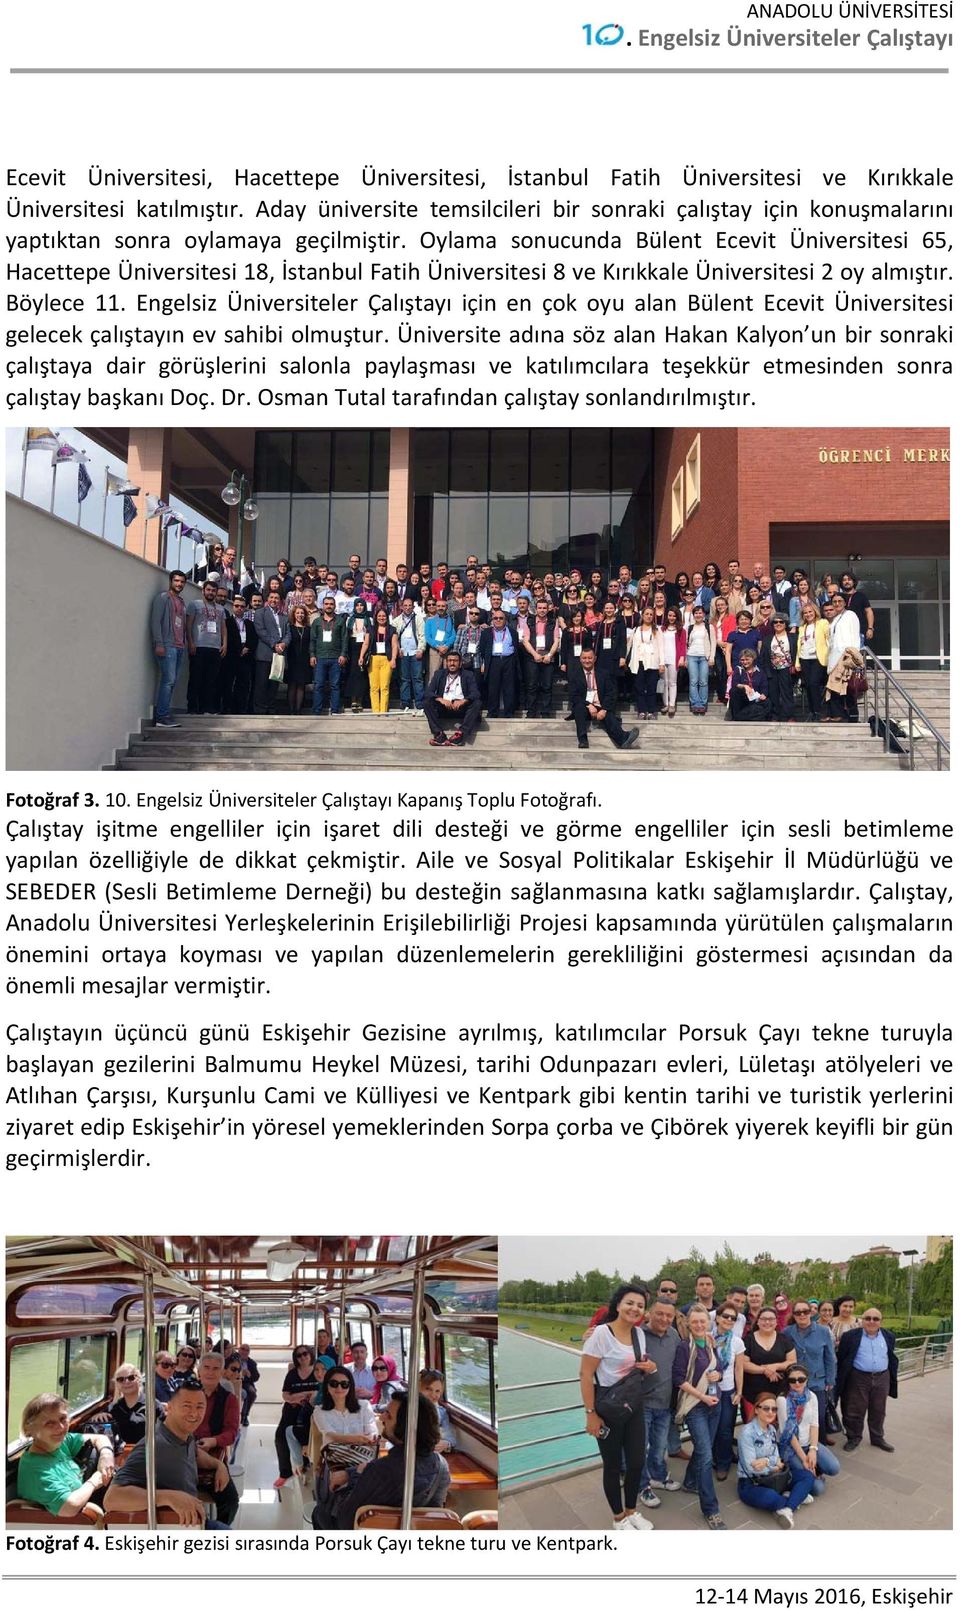 Oylama sonucunda Bülent Ecevit Üniversitesi 65, Hacettepe Üniversitesi 18, İstanbul Fatih Üniversitesi 8 ve Kırıkkale Üniversitesi 2 oy almıştır.